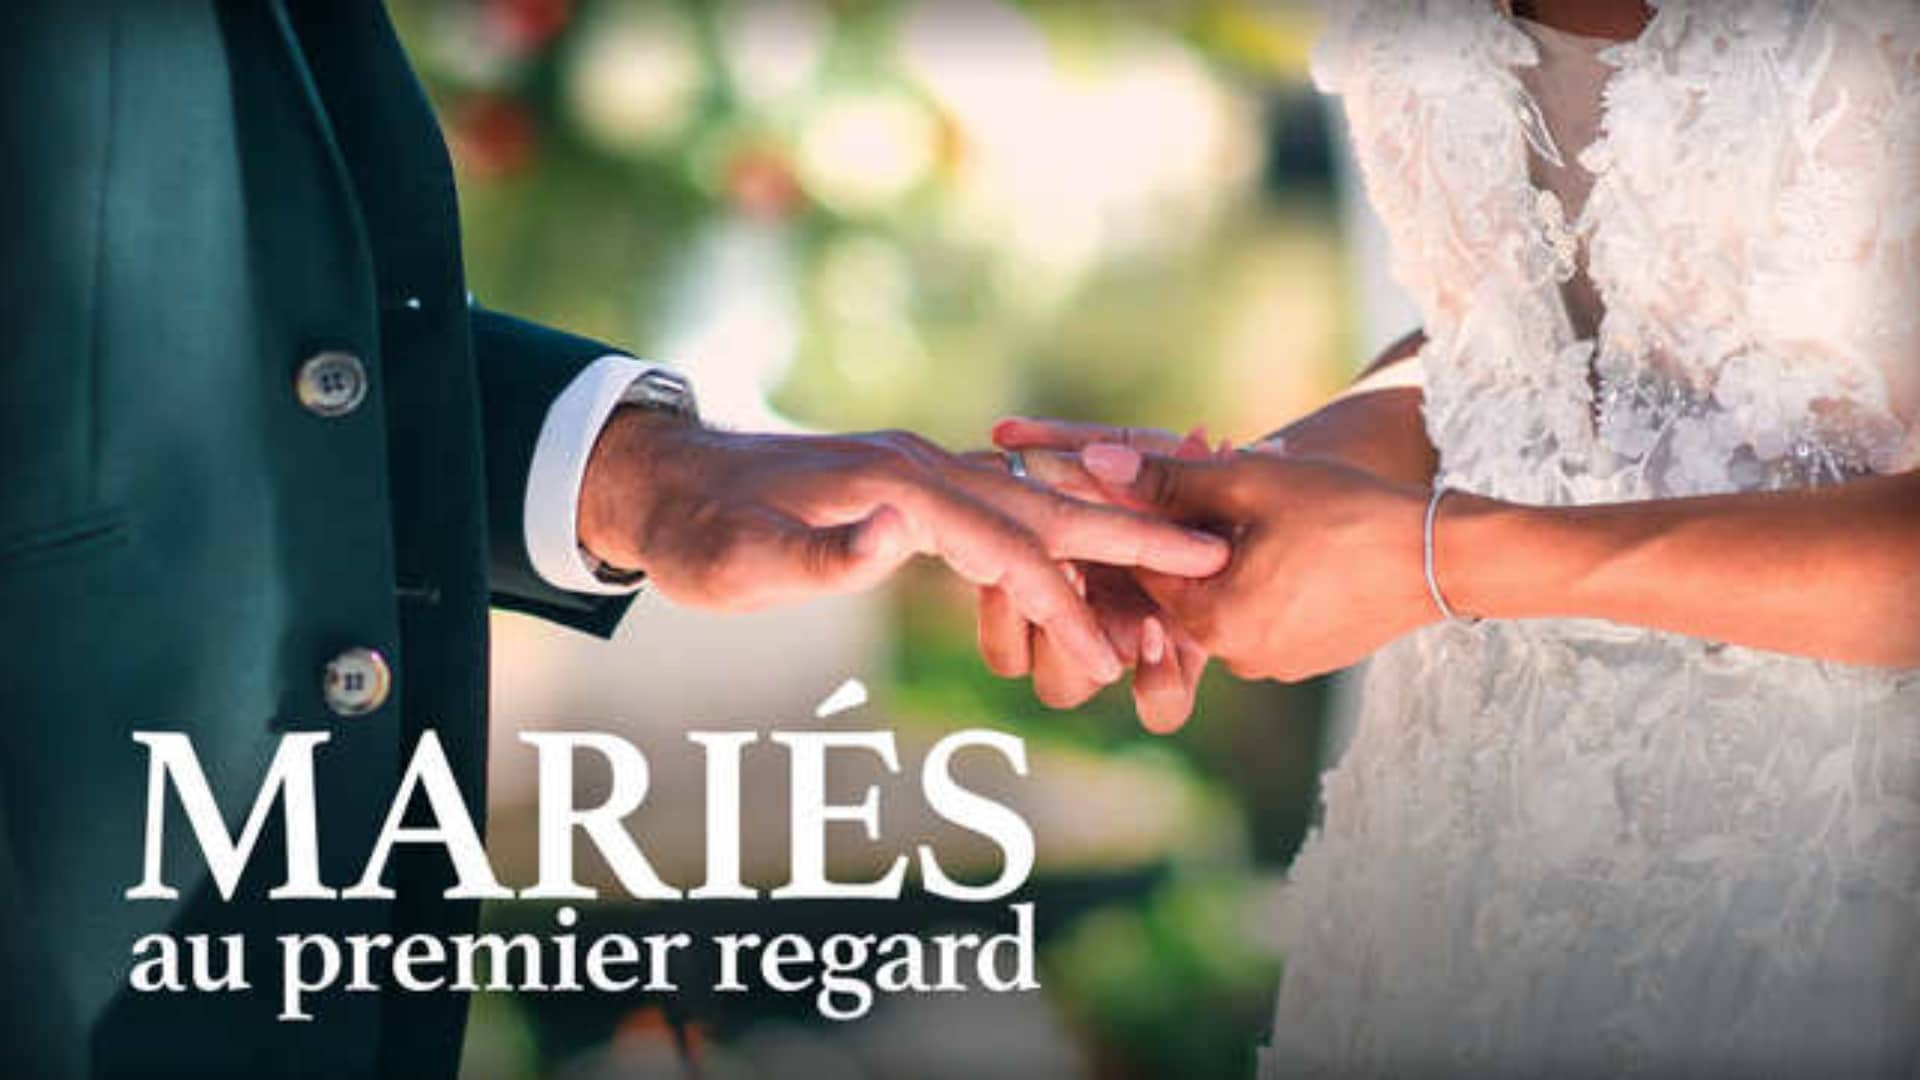 Mariés au premier regard : l'identité des couples toujours mariés à ce jour se précise